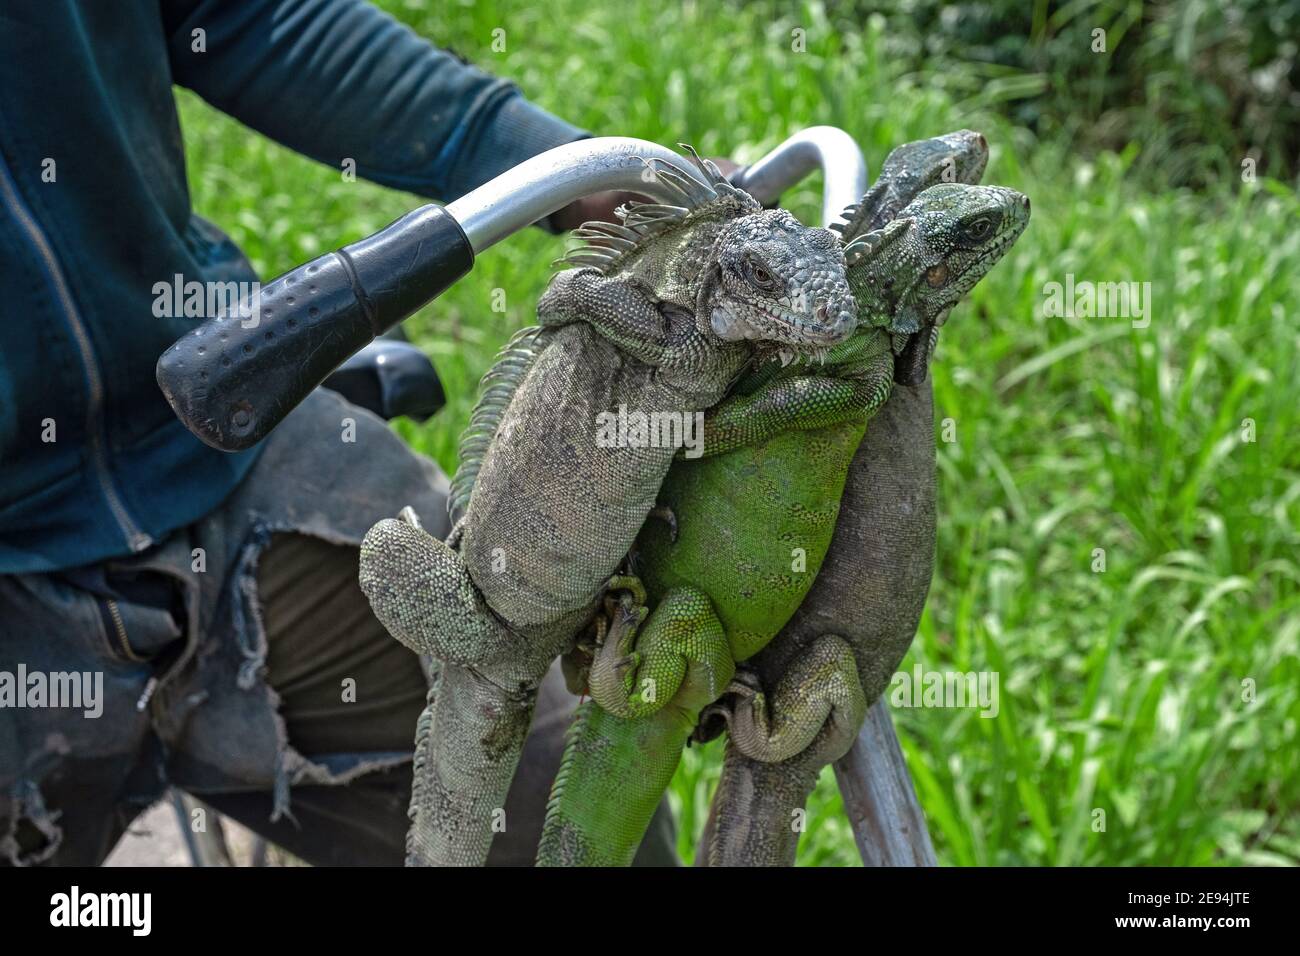 Uomo surinamese che mostra iguane verdi morte (Iguana iguana) appese dalla sua bicicletta, ucciso per la carne come fonte di cibo in Suriname / Surinam Foto Stock